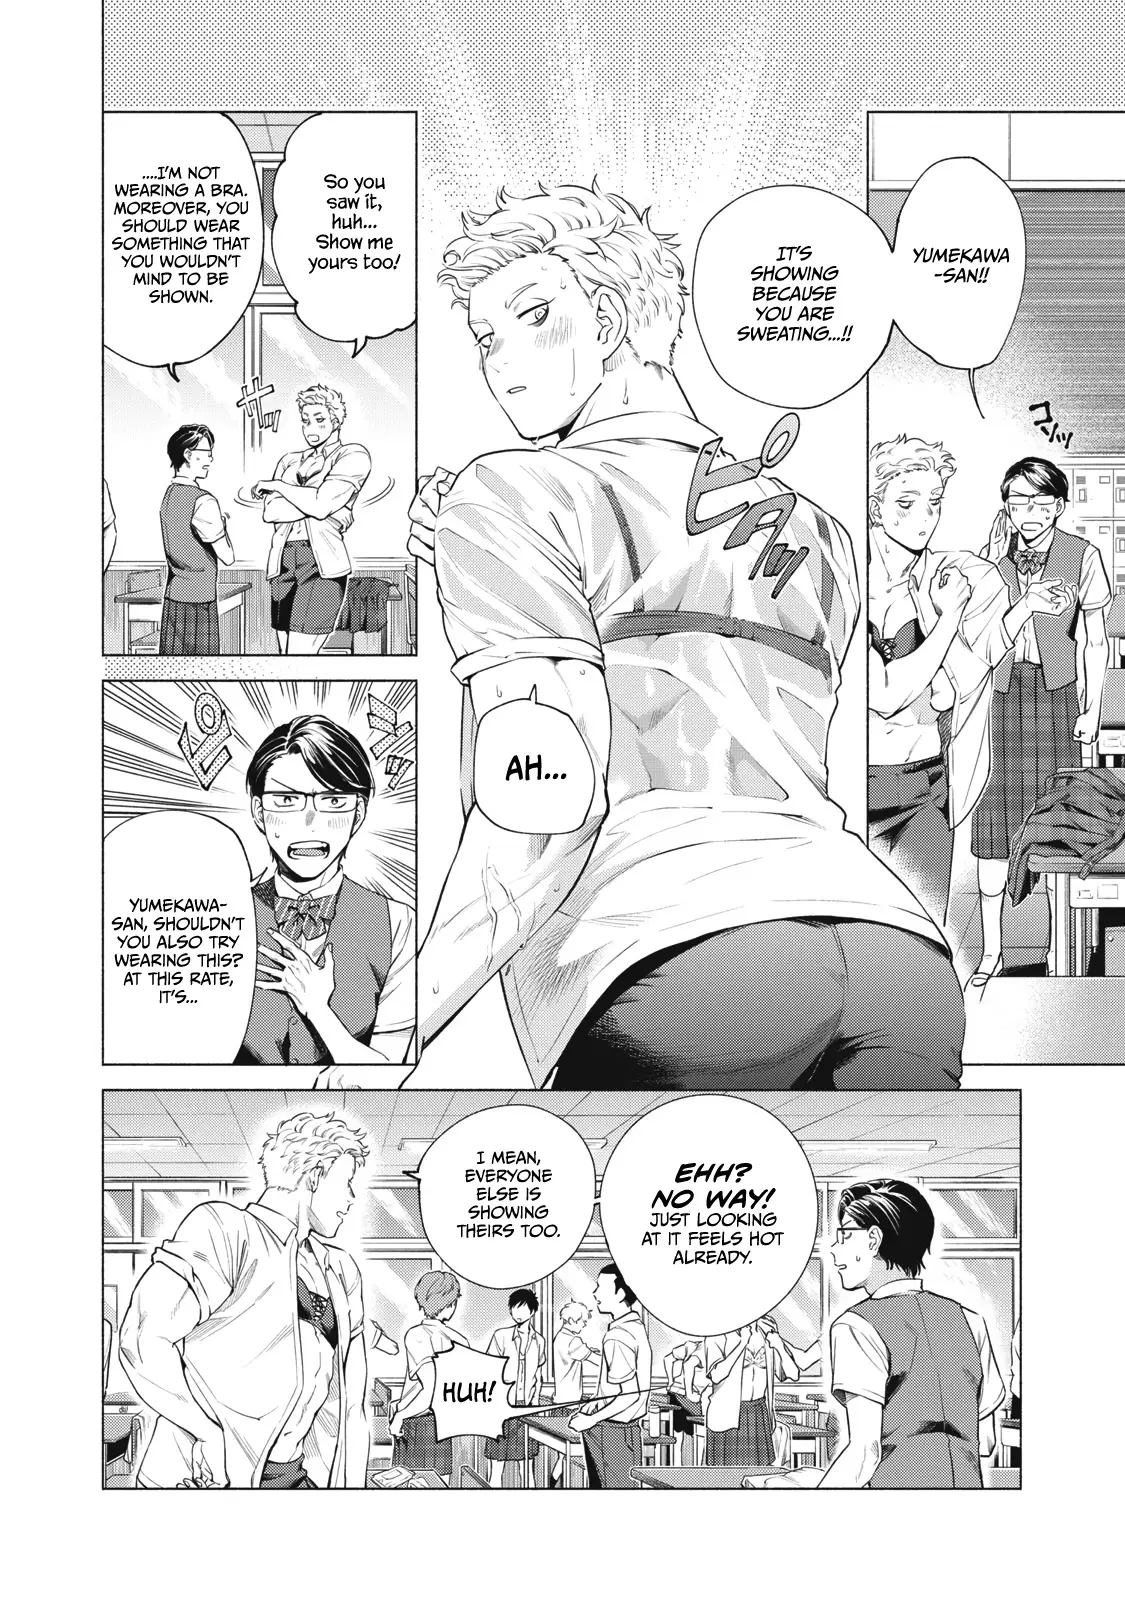 Reiwa Hanamaru Gakuen - 6 page 3-71c5e05e